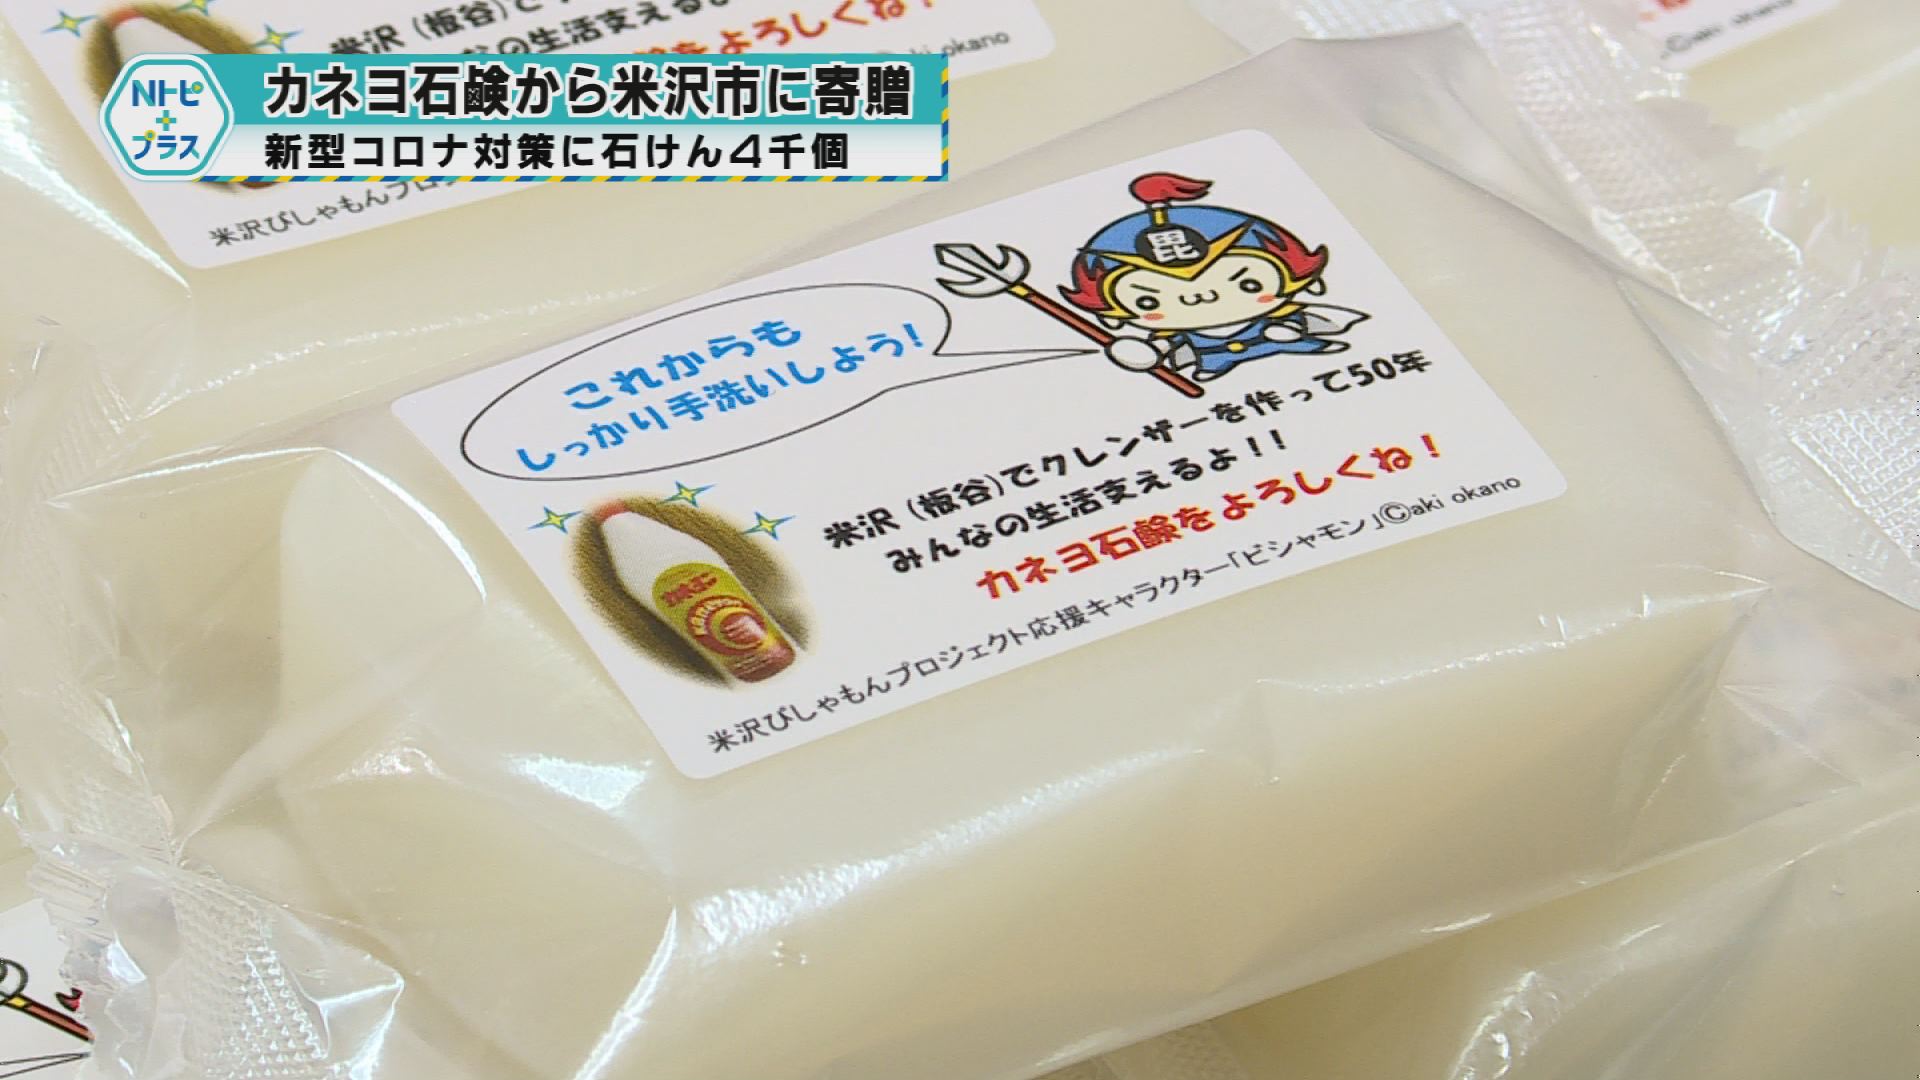 「カネヨ石鹸から米沢市に石けん寄贈」新型コロナ対策に石けん4000個